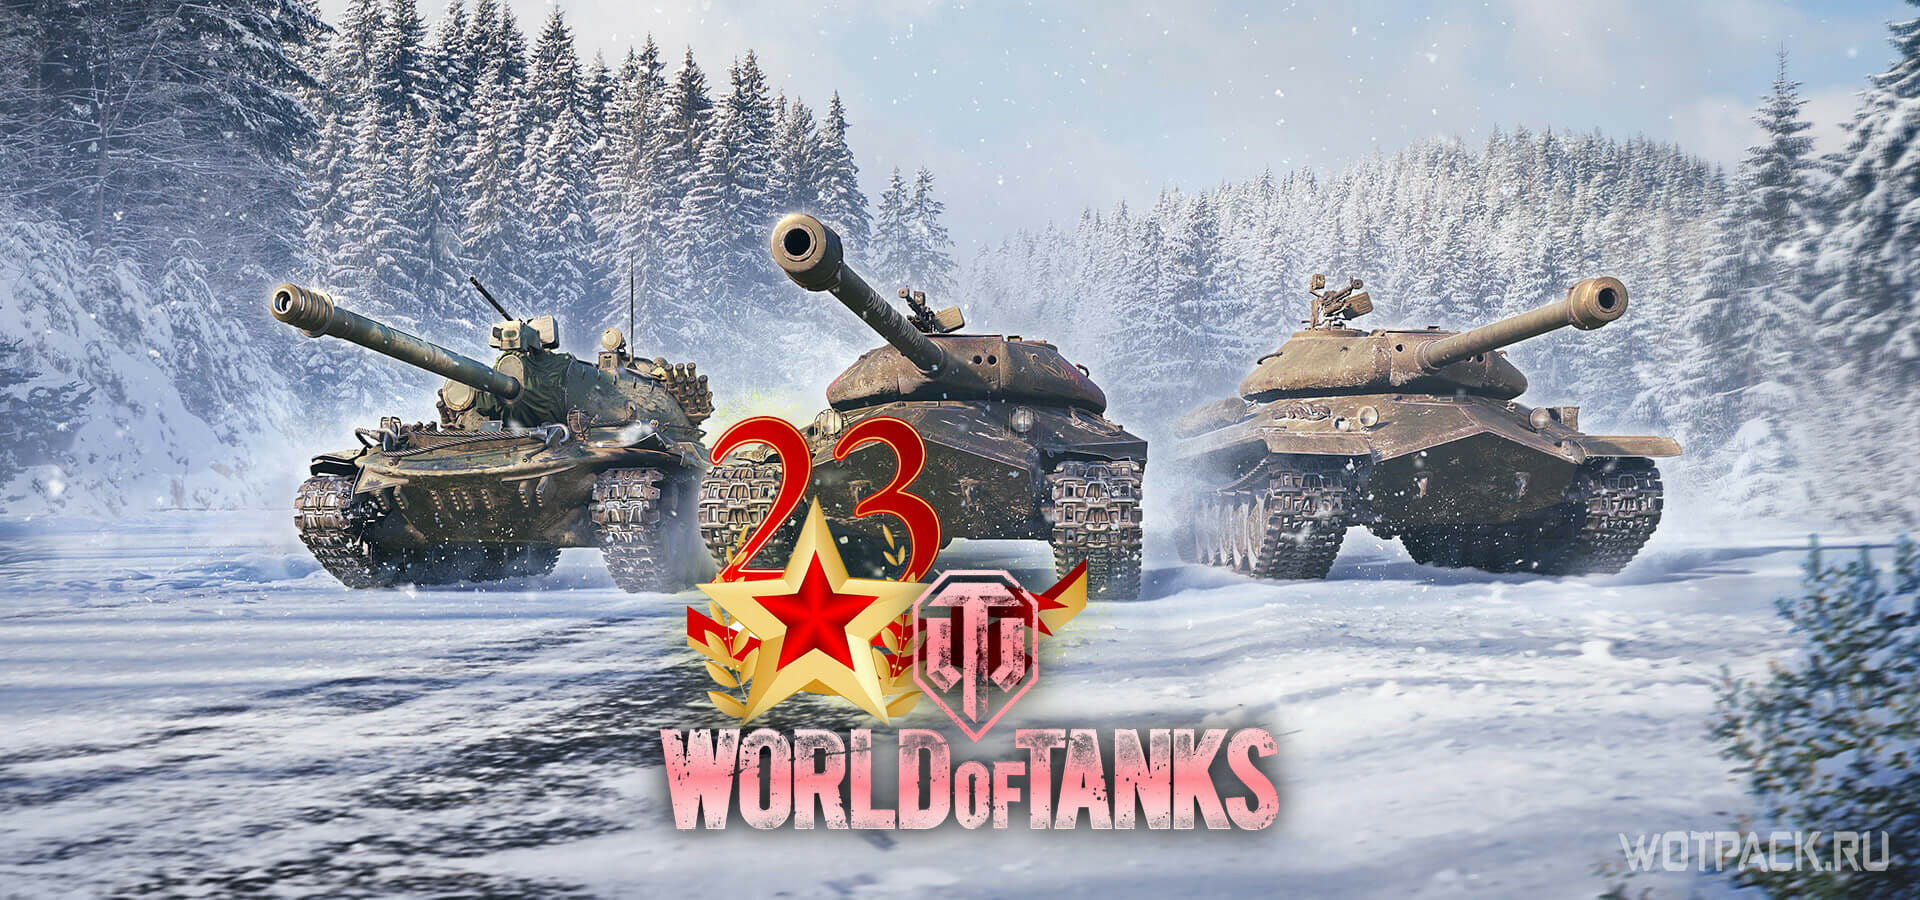 Ворлд оф танк 23 февраля. 23 Февраля танки. Танк на 23 февраля. 23 Февраля с танками.